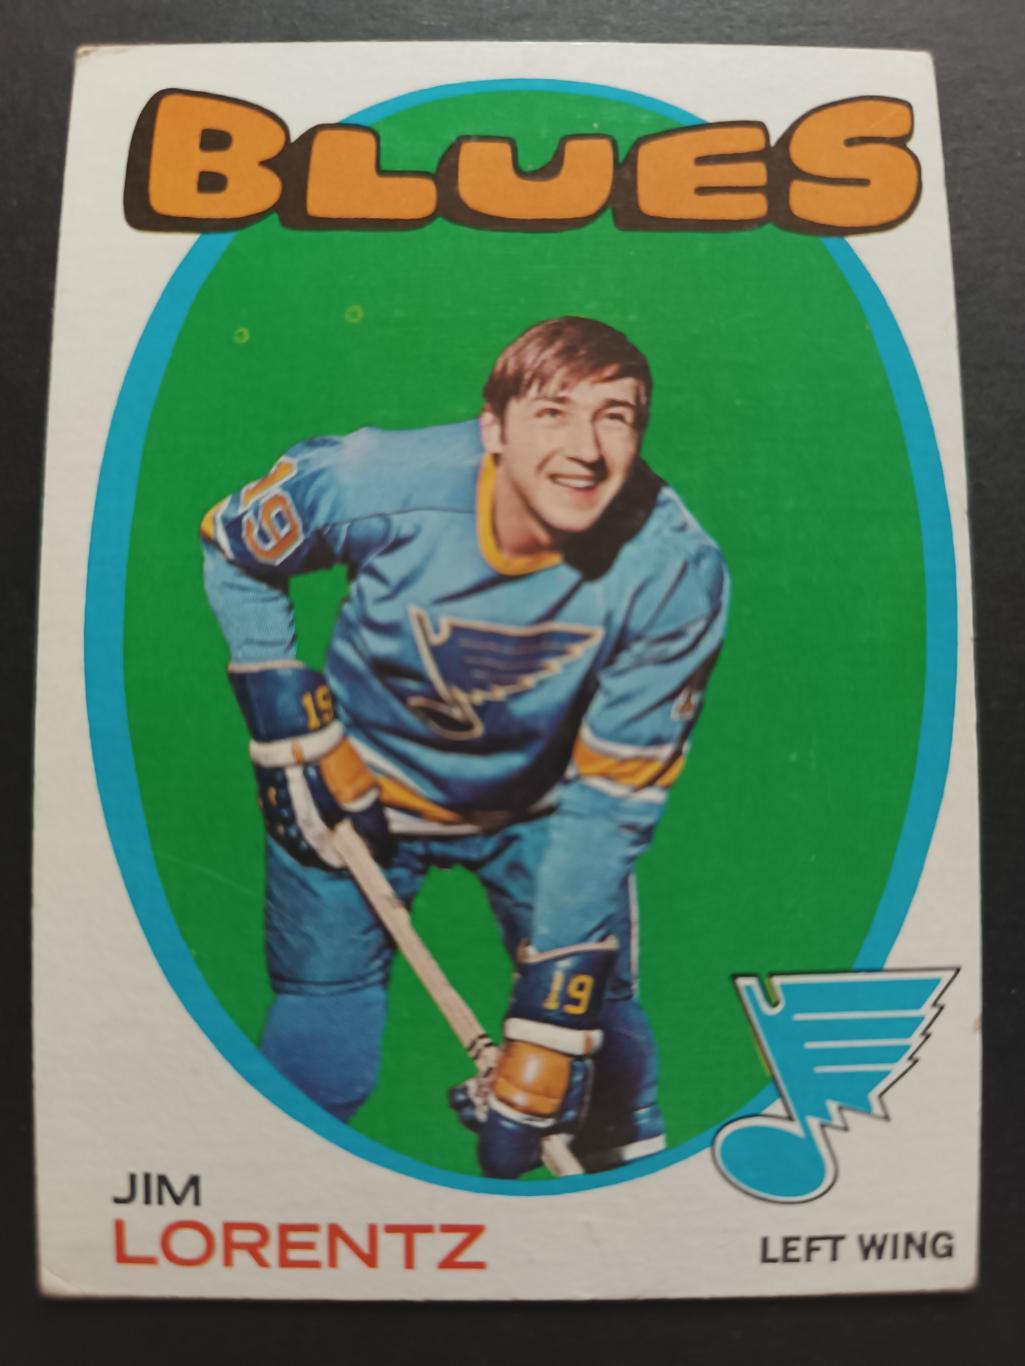 ХОККЕЙ КАРТОЧКА НХЛ TOPPS 1971-72 NHL JIM LORENTZ ST. LOUIS BLUES #13